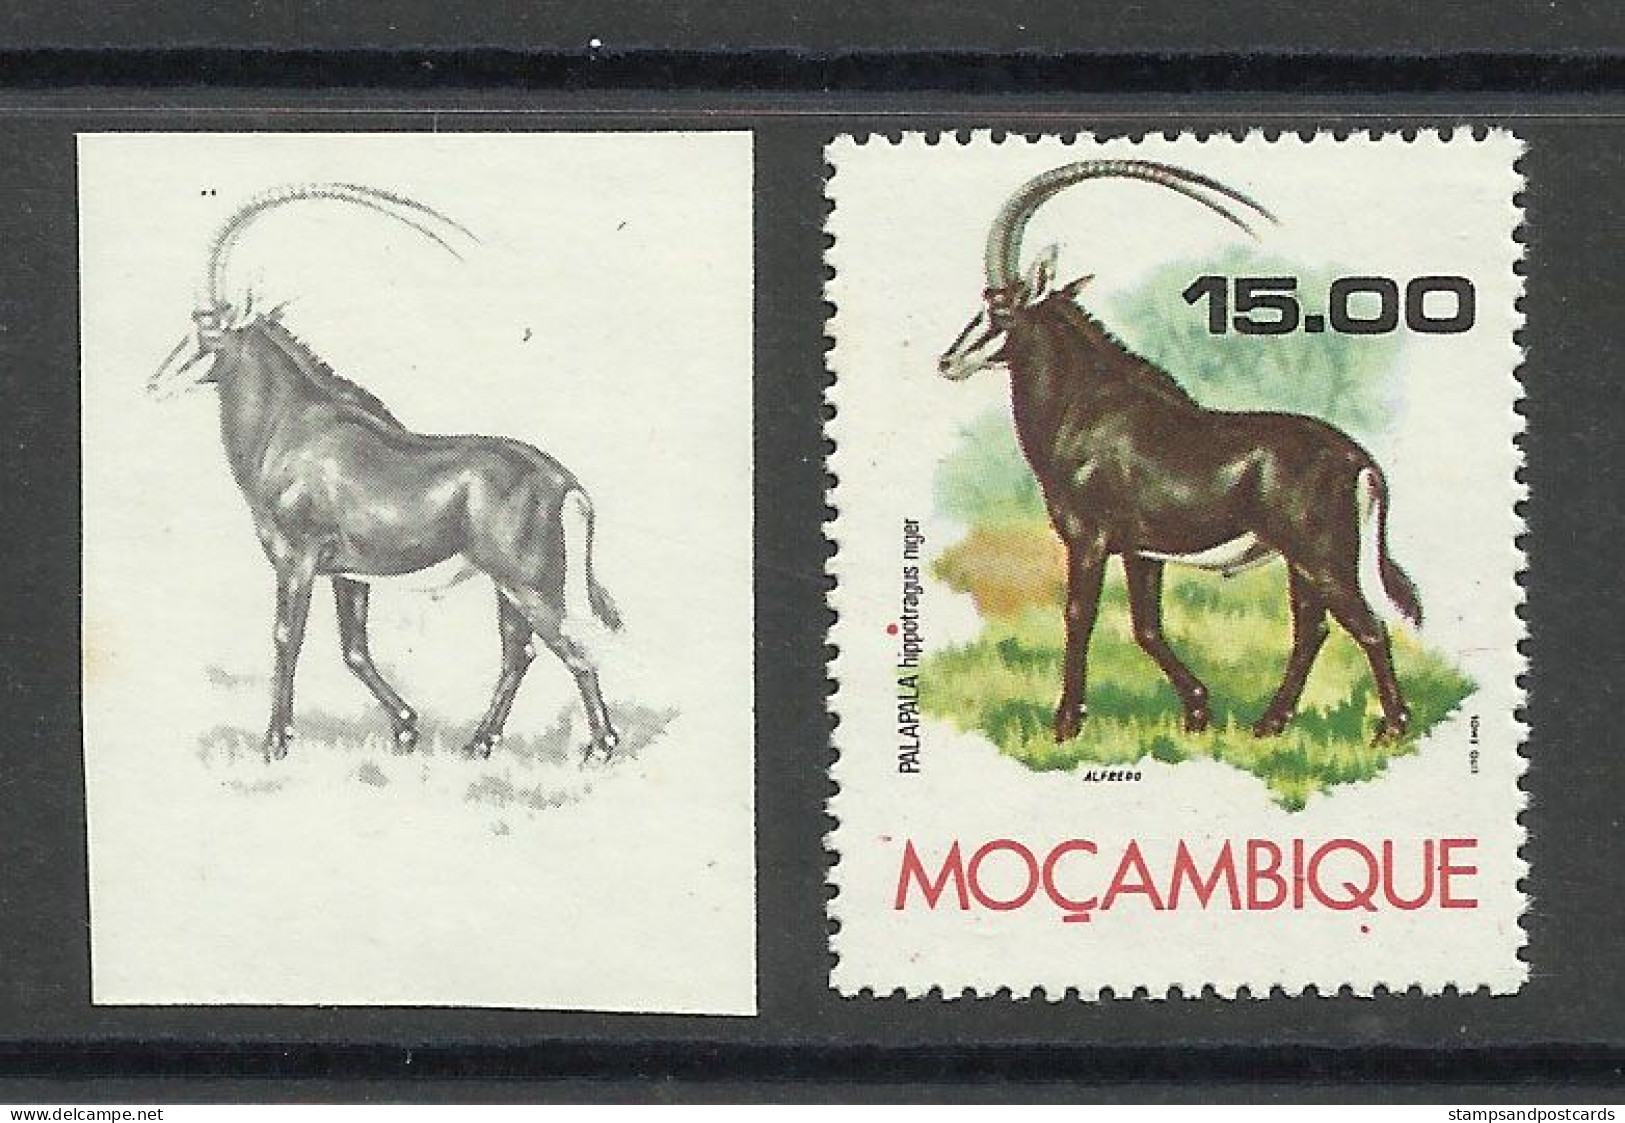 Mozambique 1976 Preuve De Couleur Hippotrague Noir Moçambique 1976 Color Proof Sable Antelope - Rinoceronti